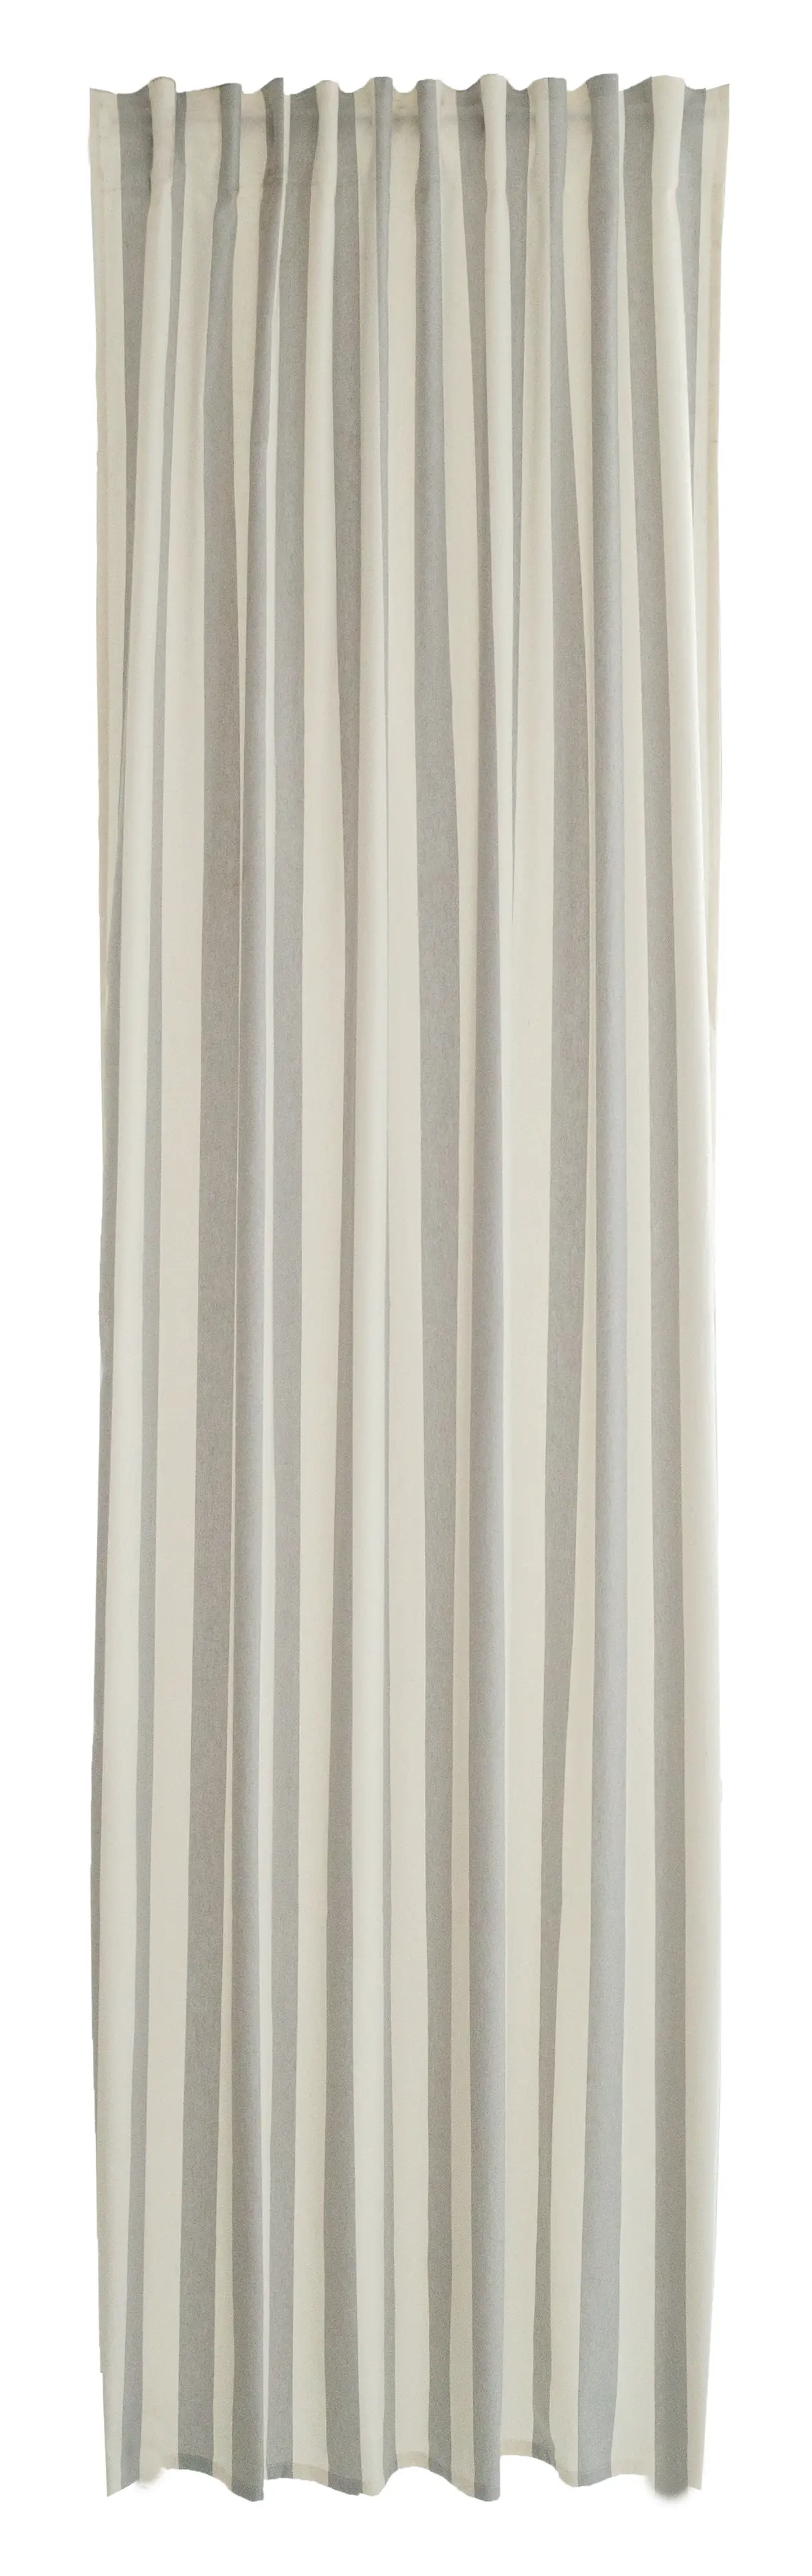 Vorhang baumwolle grau-beige streifen | Vorhänge